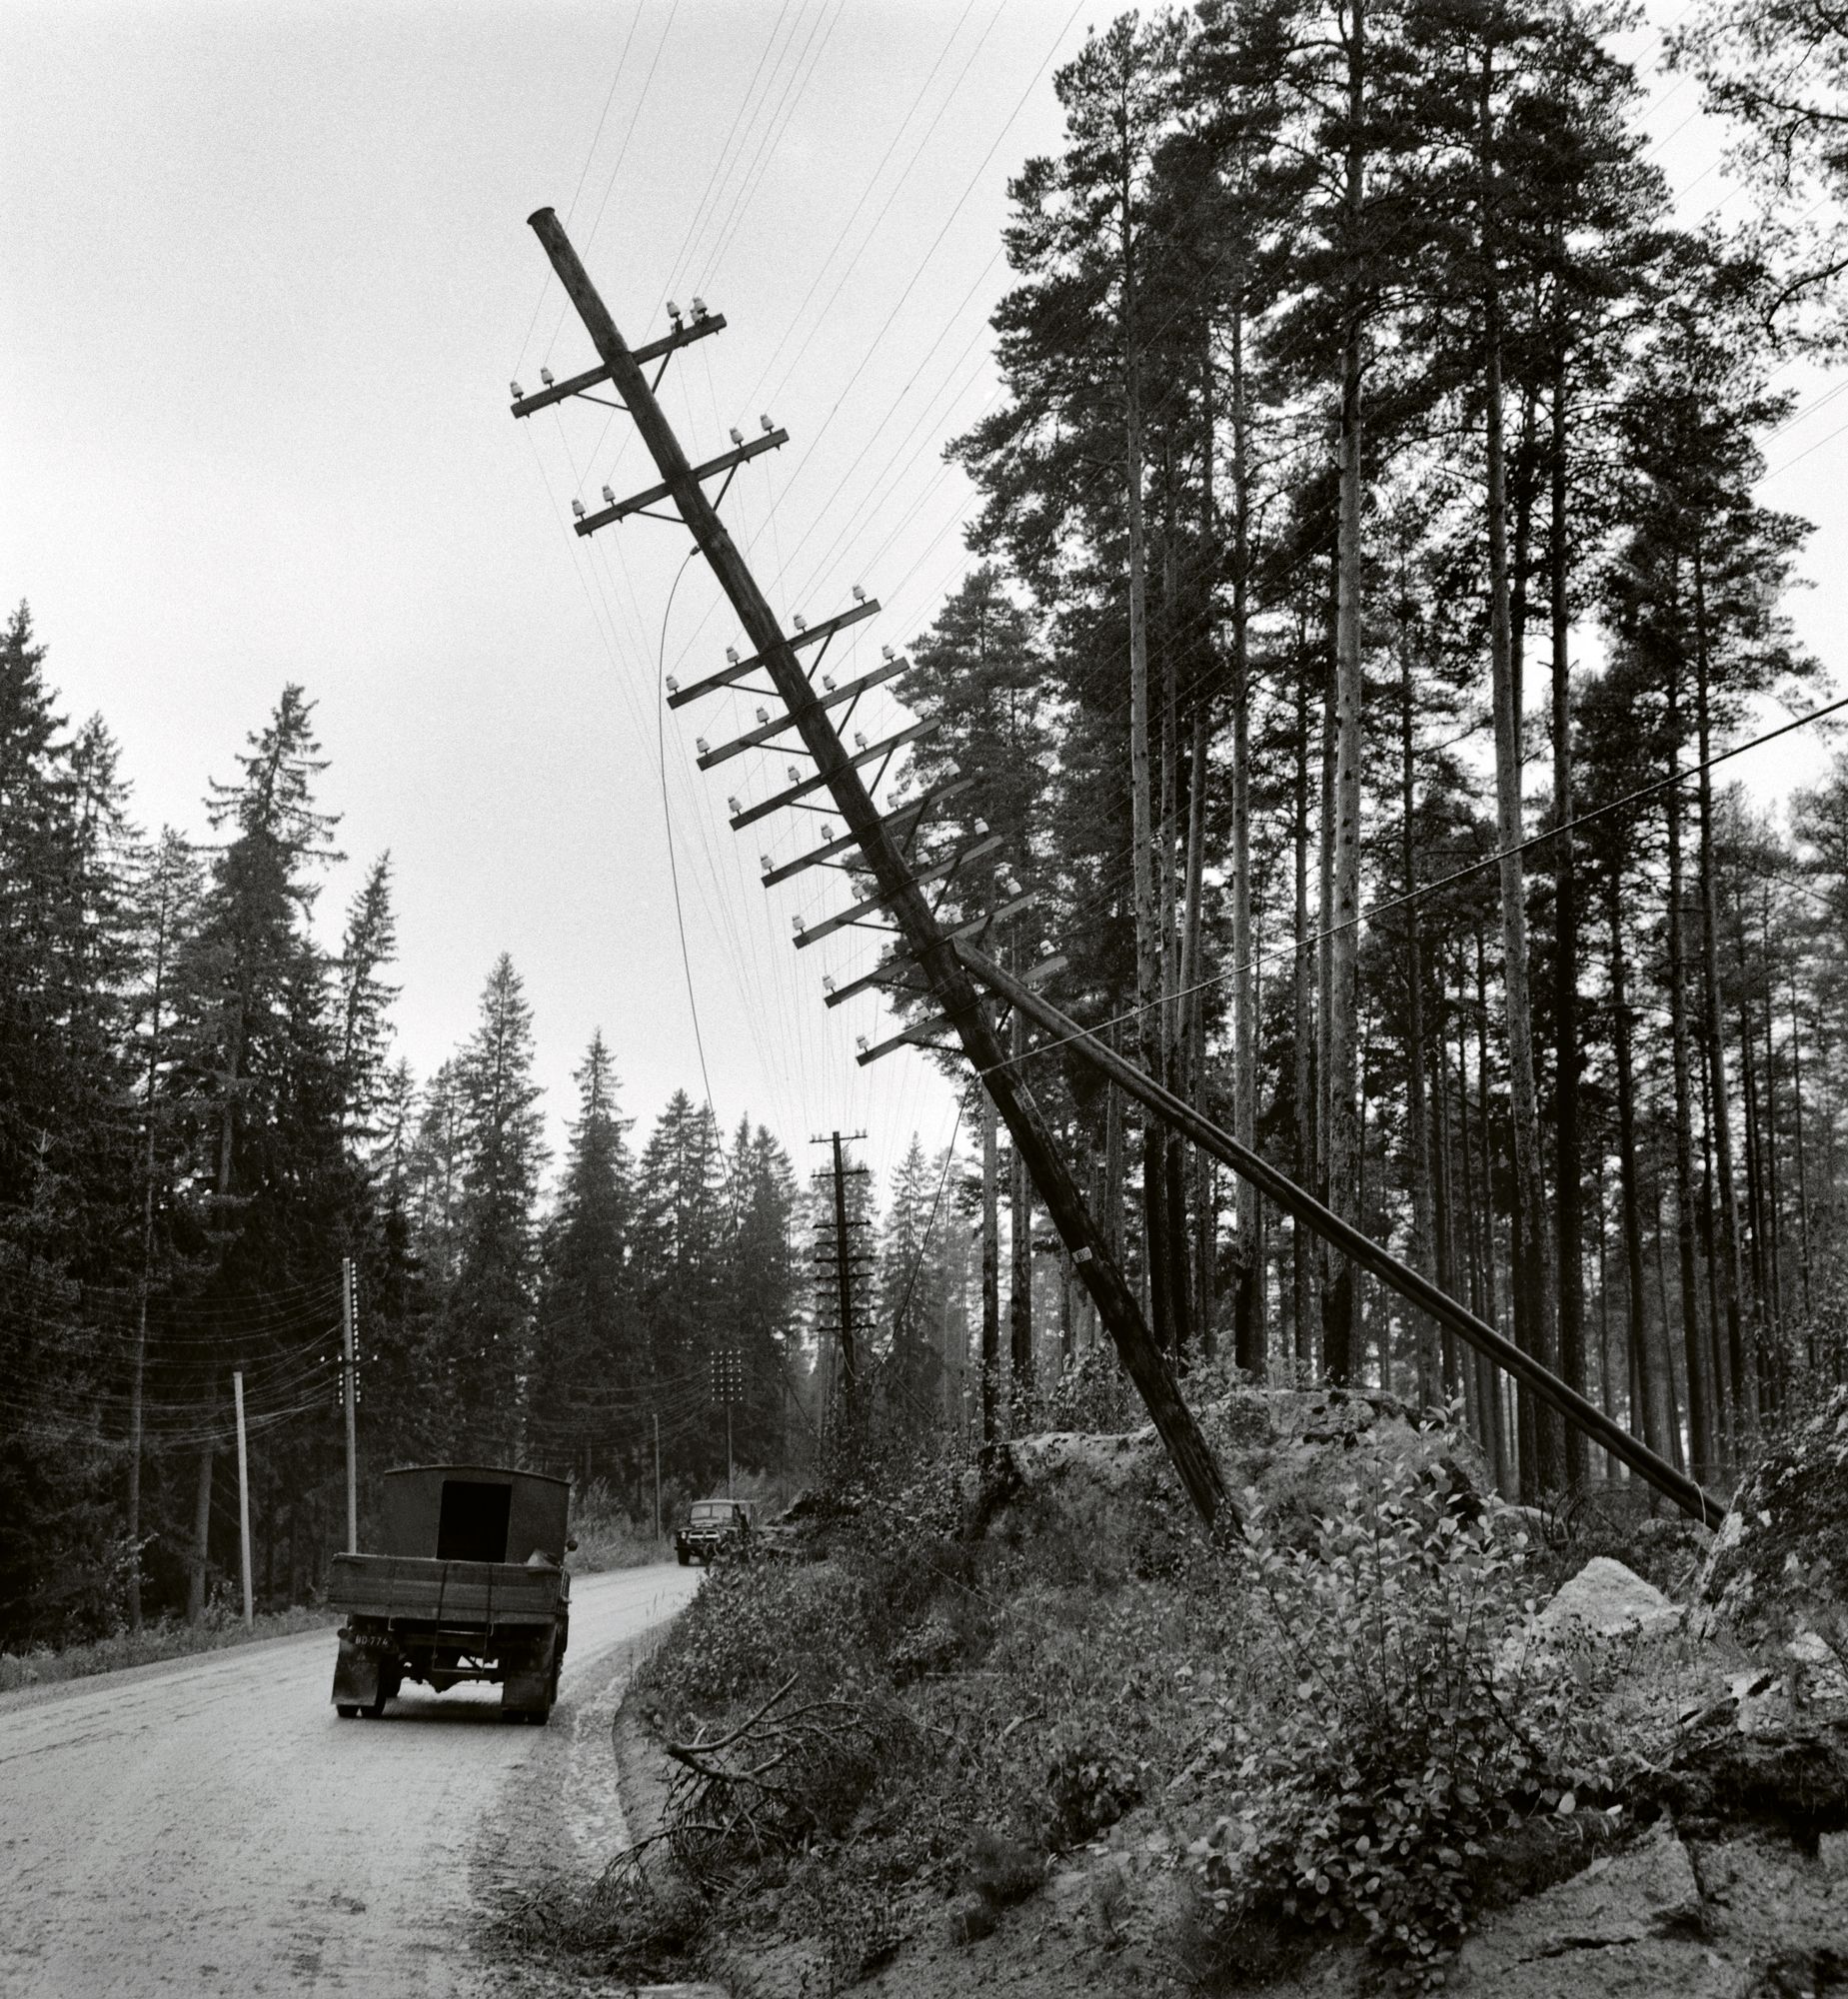 Sähköpylväitä kaatui ja sähköt katkeilivat laajoilla alueilla. © Lehtikuva